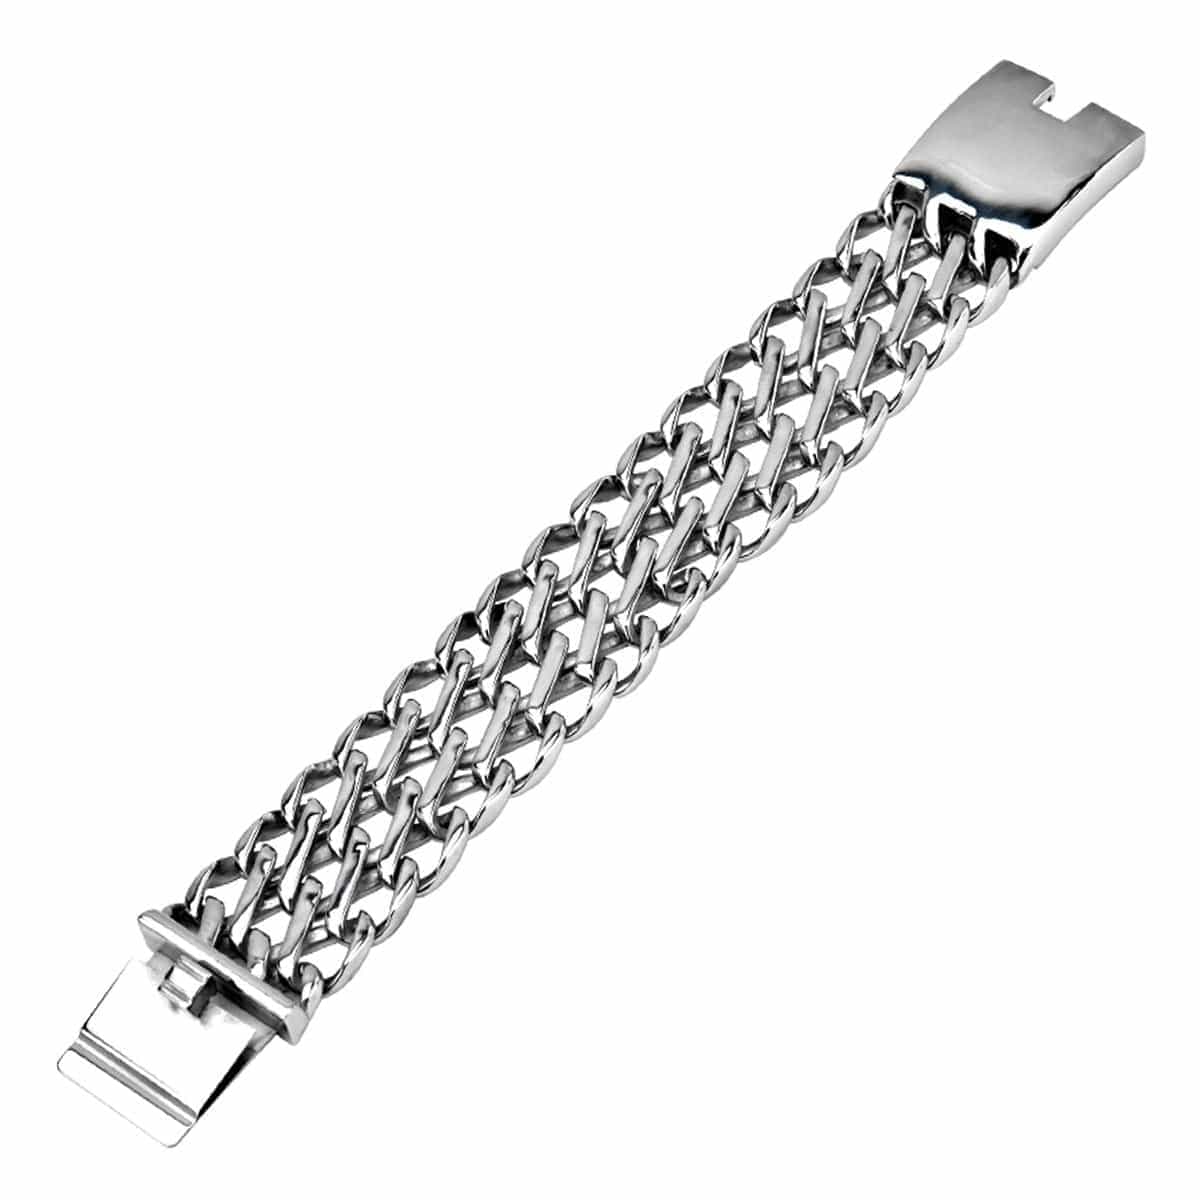 INOX JEWELRY Bracelets Silver Tone Stainless Steel Chunky Open Weave Bracelet BRB020